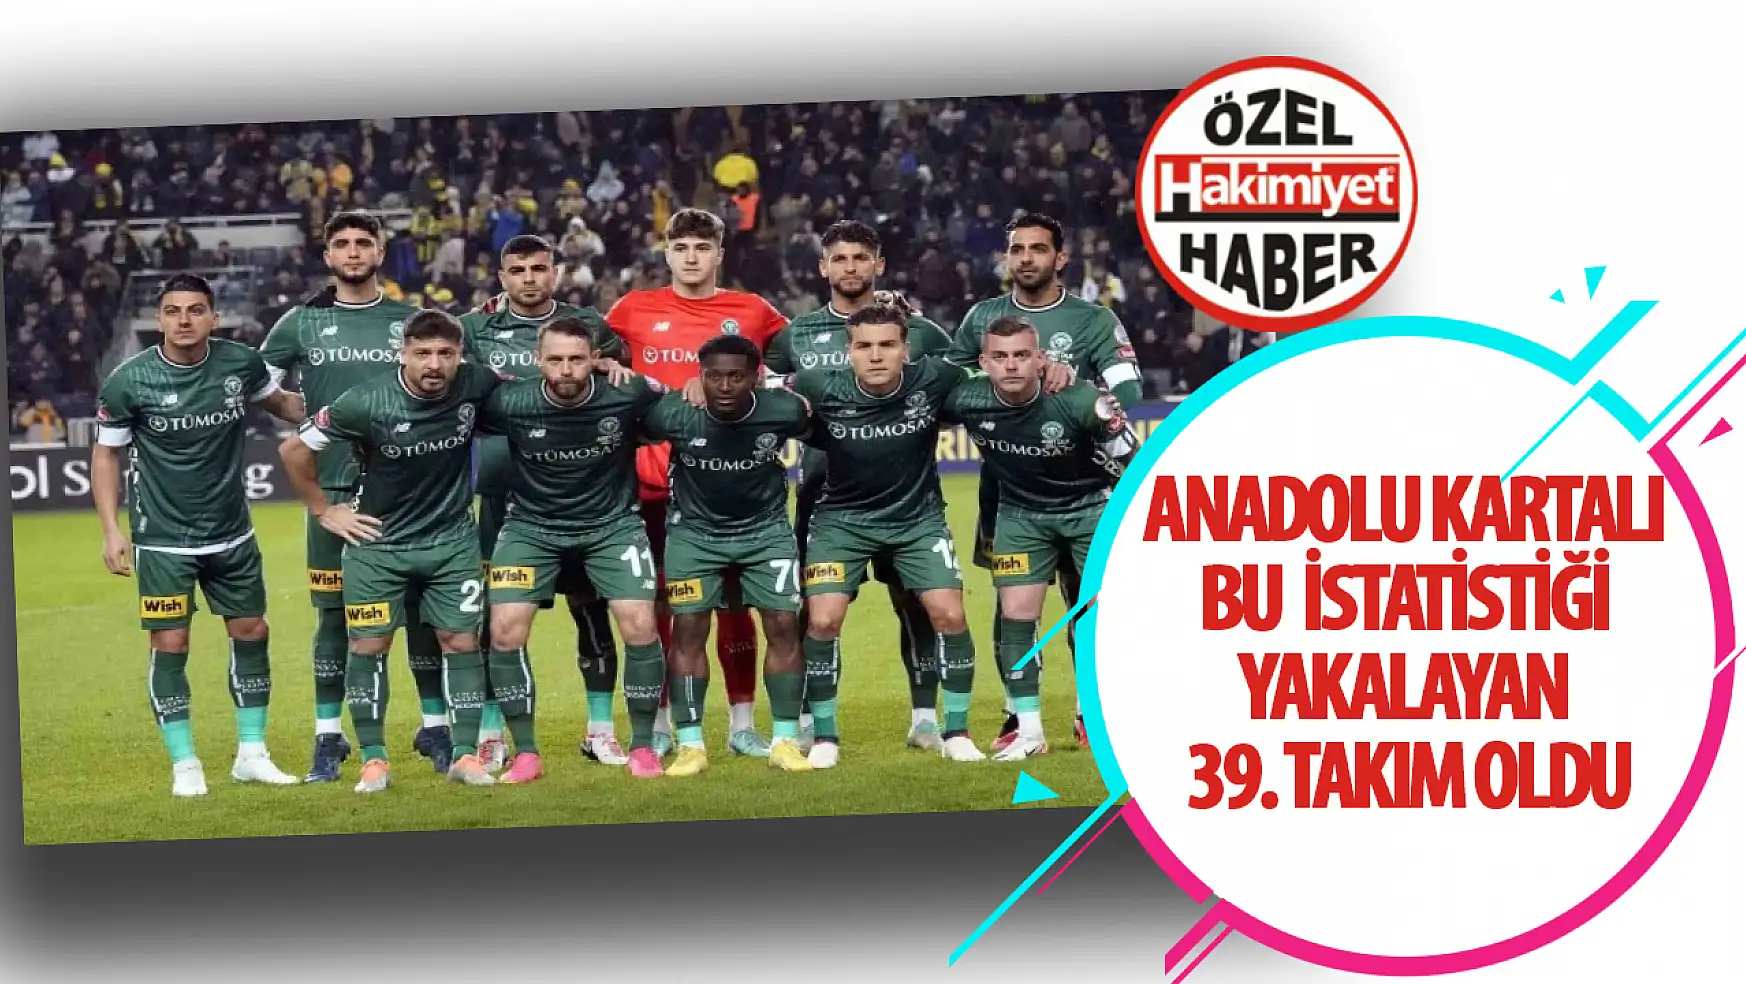 Anadolu Kartalı bu istatistiği yakalayan 39. takım oldu!